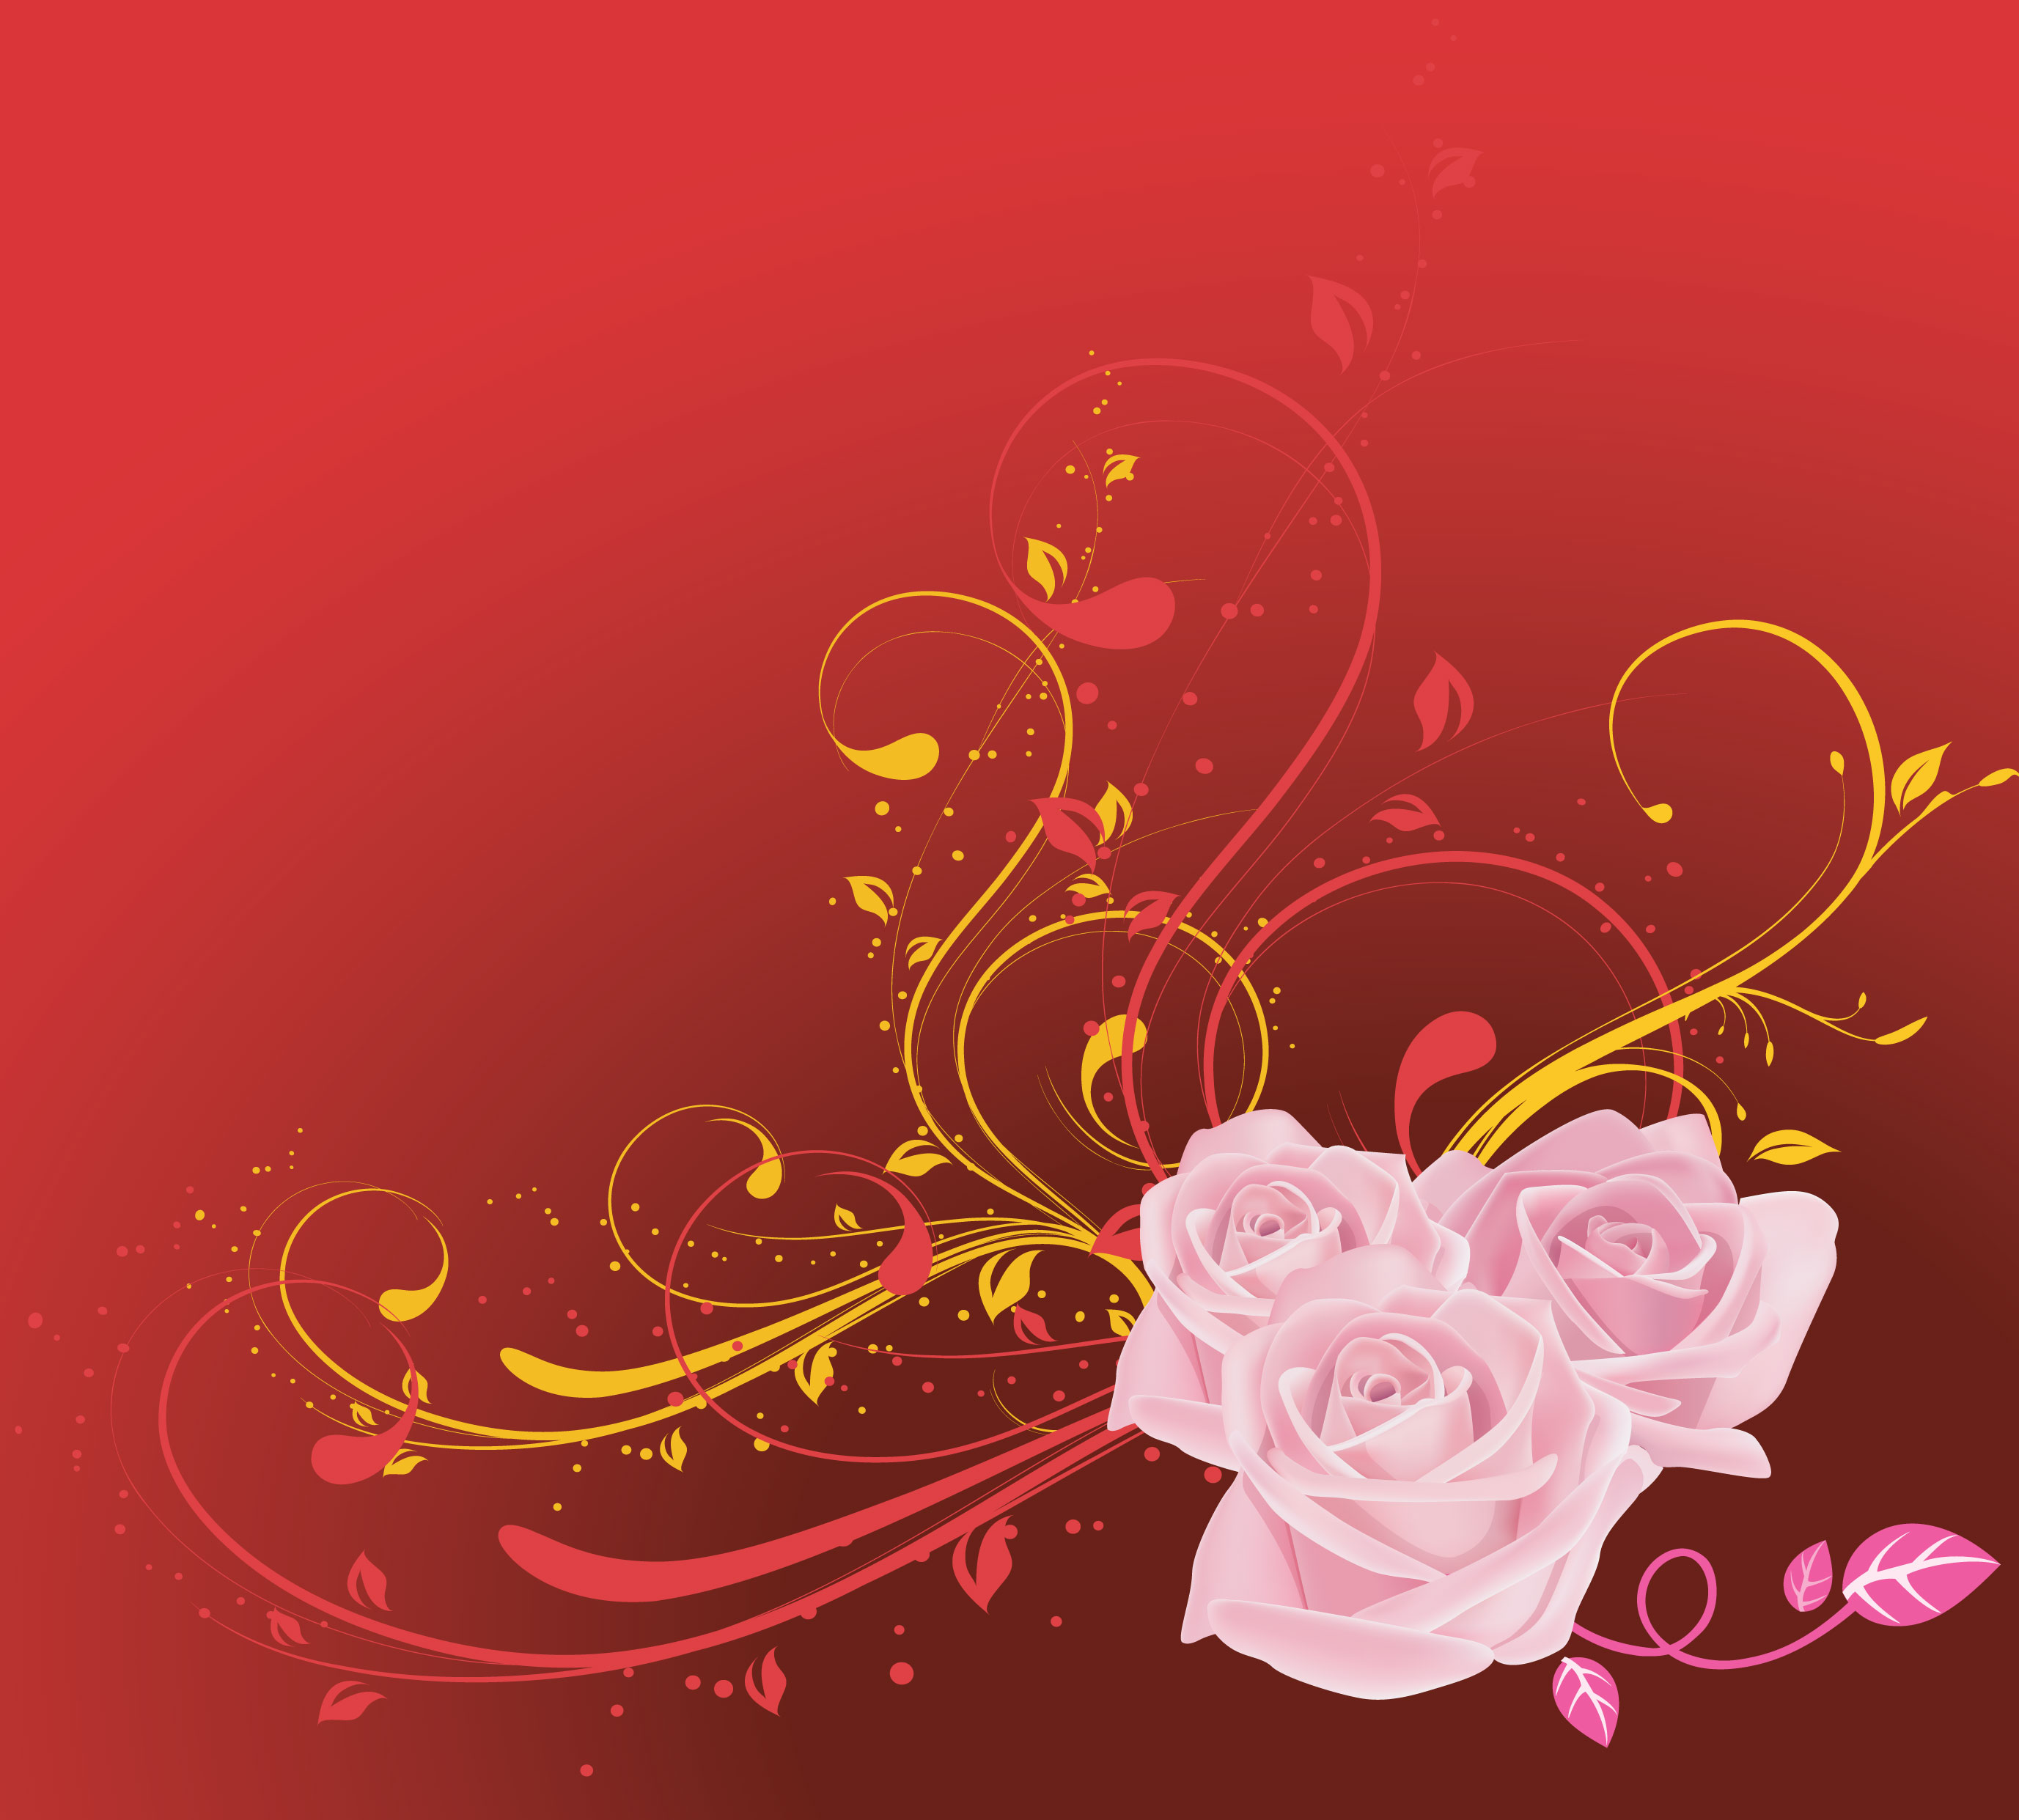 バラの画像 イラスト 壁紙 背景用 No 690 ピンクのバラ 赤背景